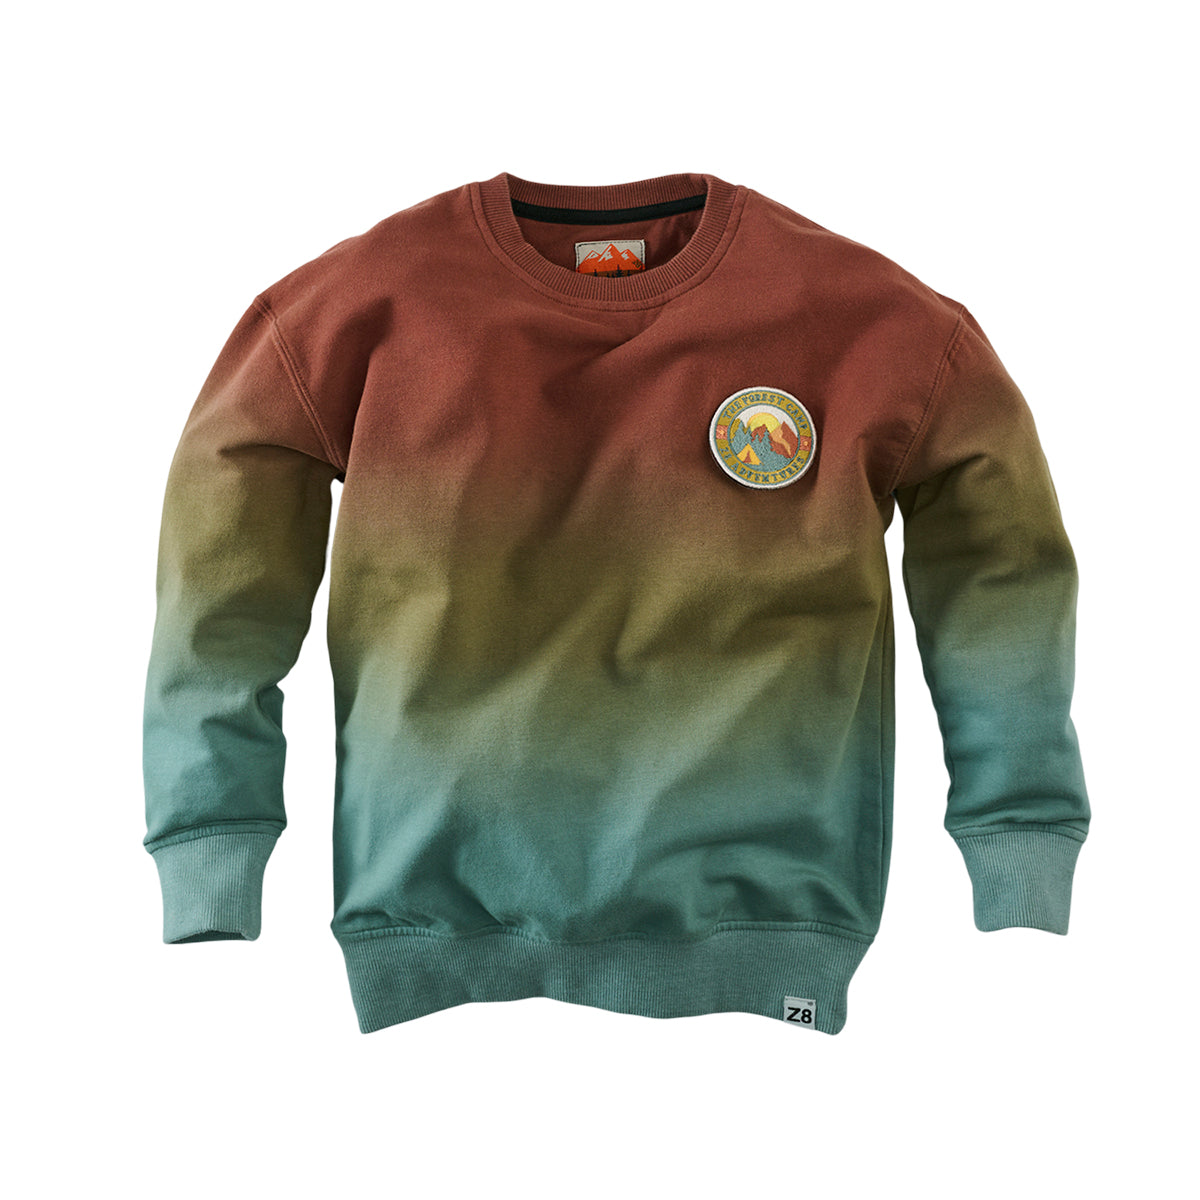 Jongens Sweater Briant van Z8 in de kleur Cinnamon cider in maat 140-146.